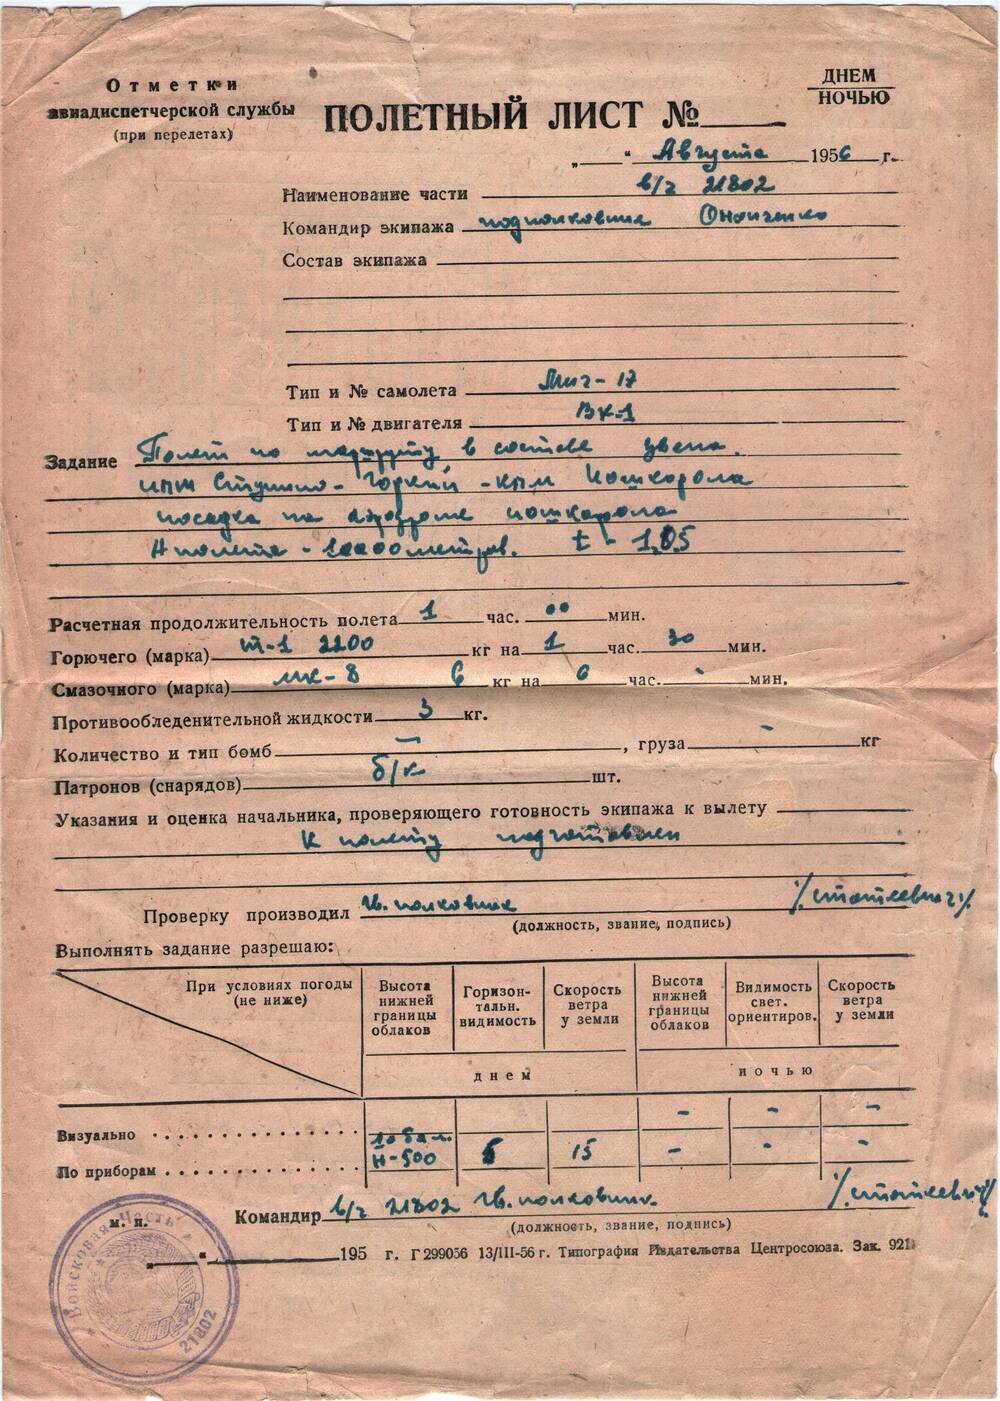 полетный лист в/ч 21802 подполковника Онопченко